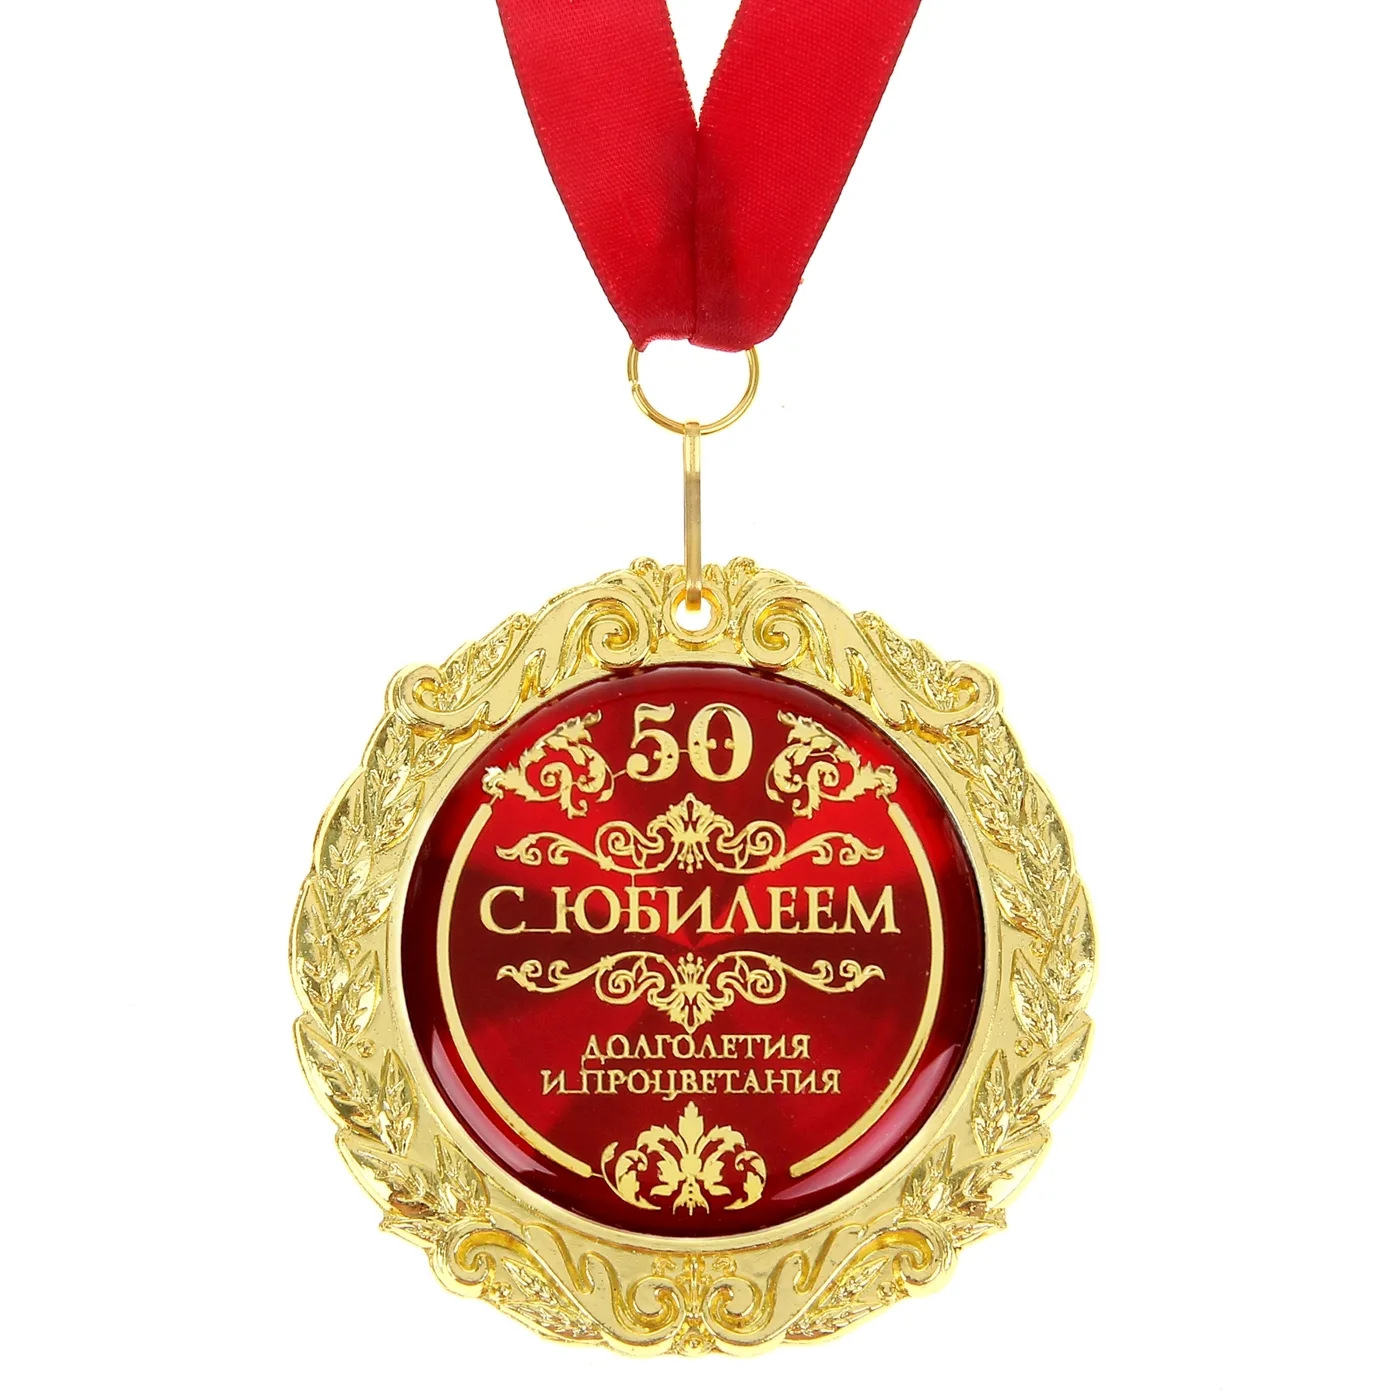 Фото Прикольные стихи к подарку медаль на юбилей #35